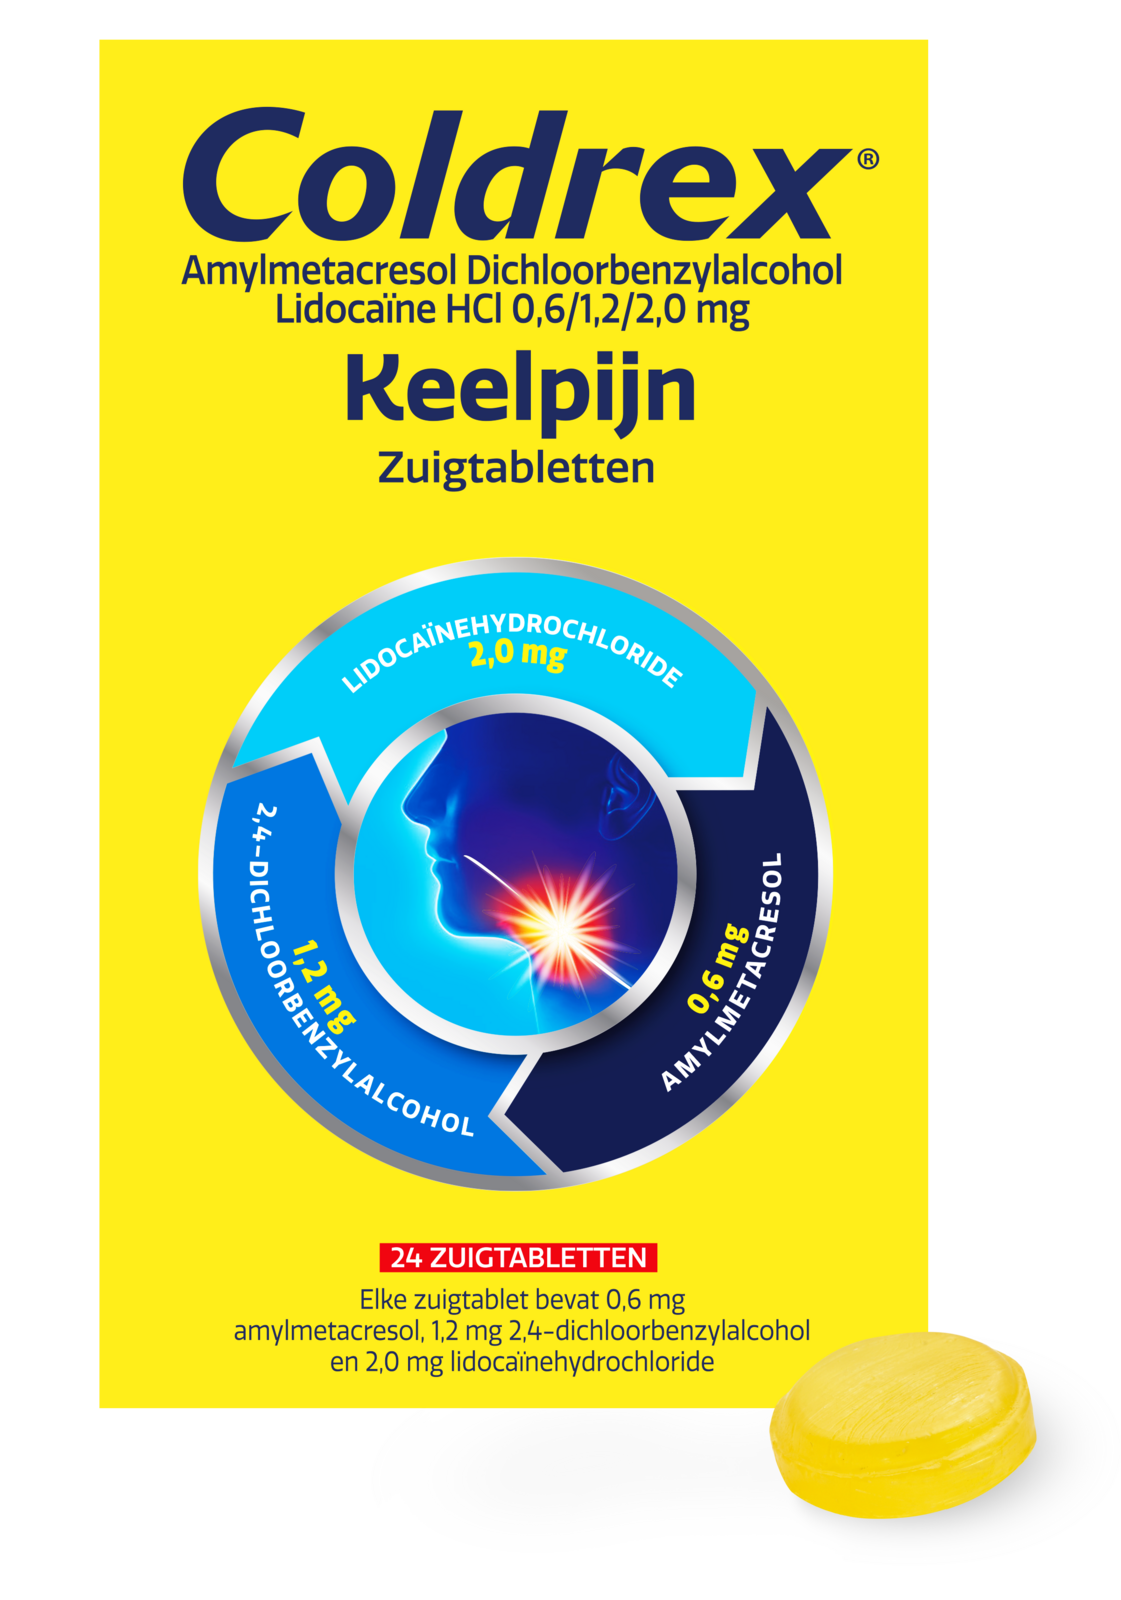 Image of Coldrex Keelpijn Zuigtabletten - Verlicht keelpijn snel en effectief 